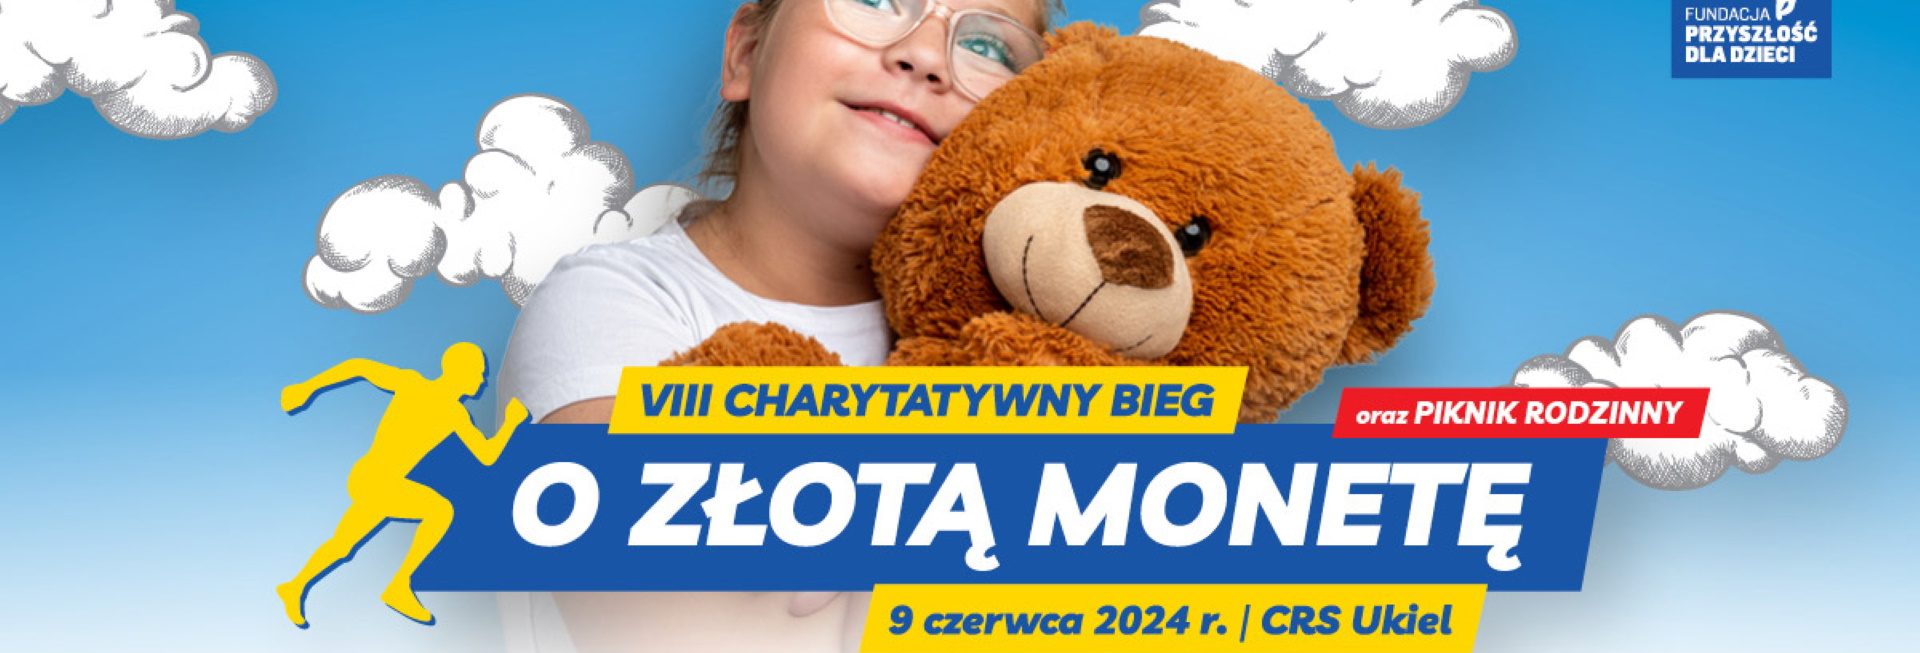 Plakat zapraszający w niedzielę 9 czerwca 2024 r. do Olsztyna na 8. edycję Charytatywnego Biegu o Złotą Monetę Olsztyn 2024.